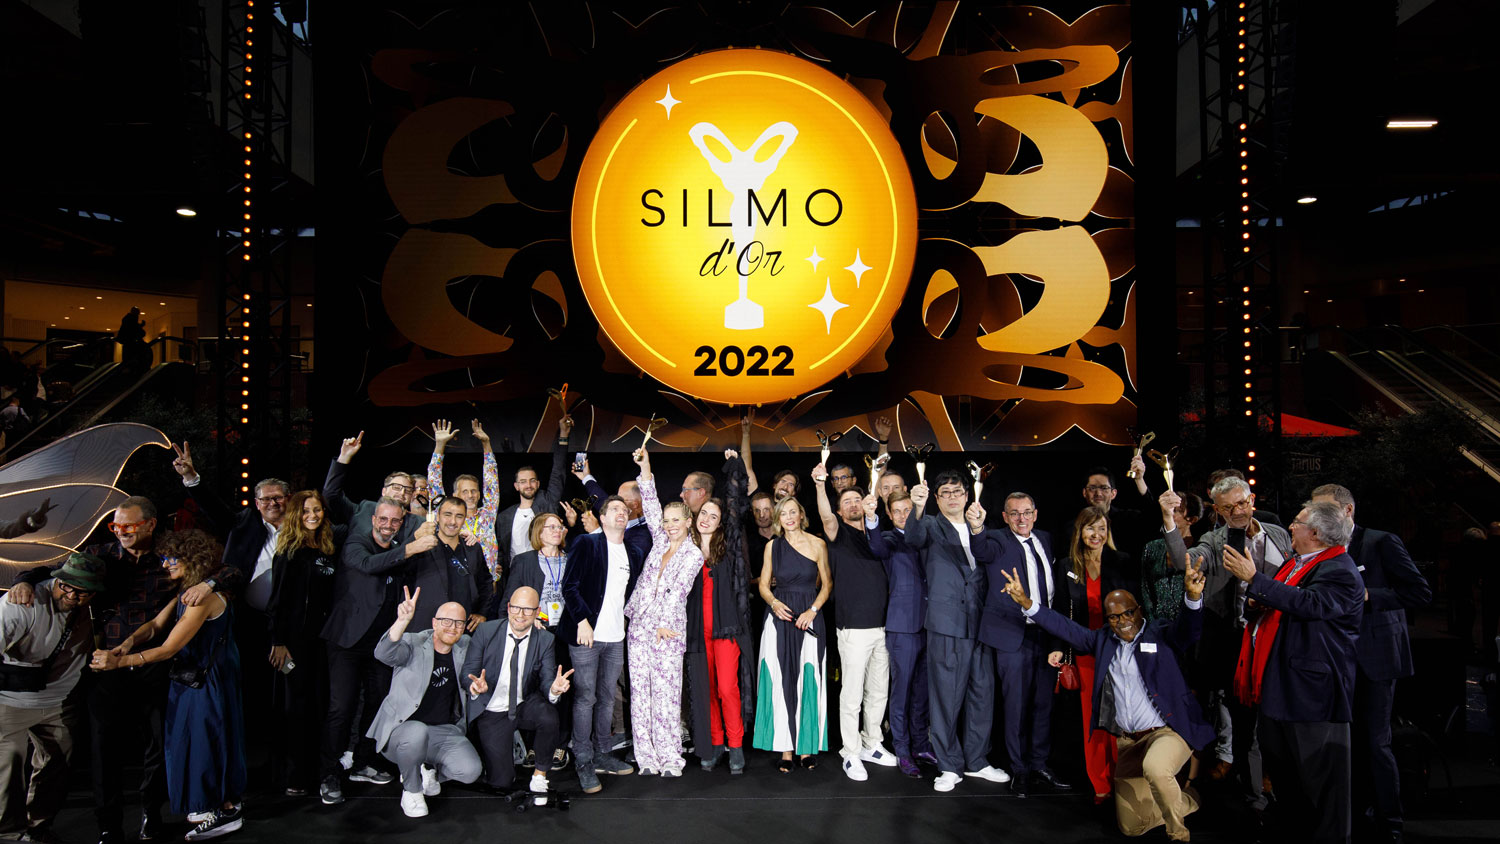 SHAMIR 02 SILMO 2022